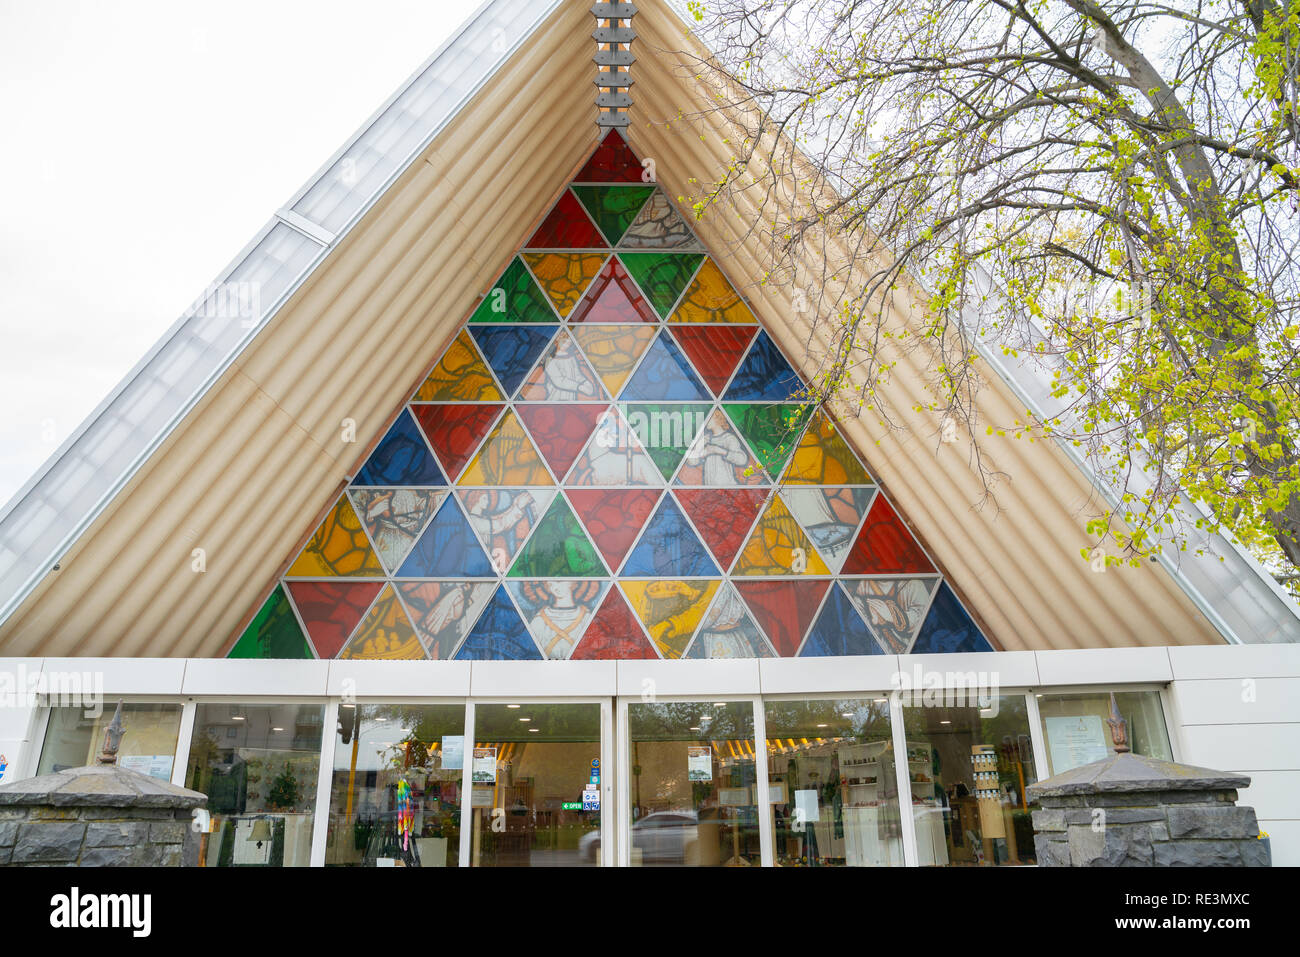 Kreative Architektur für temporäre Gebäude der Kirche nach Christchurch Erdbeben in Neuseeland. Karton Anglikanische Kathedrale Stockfoto